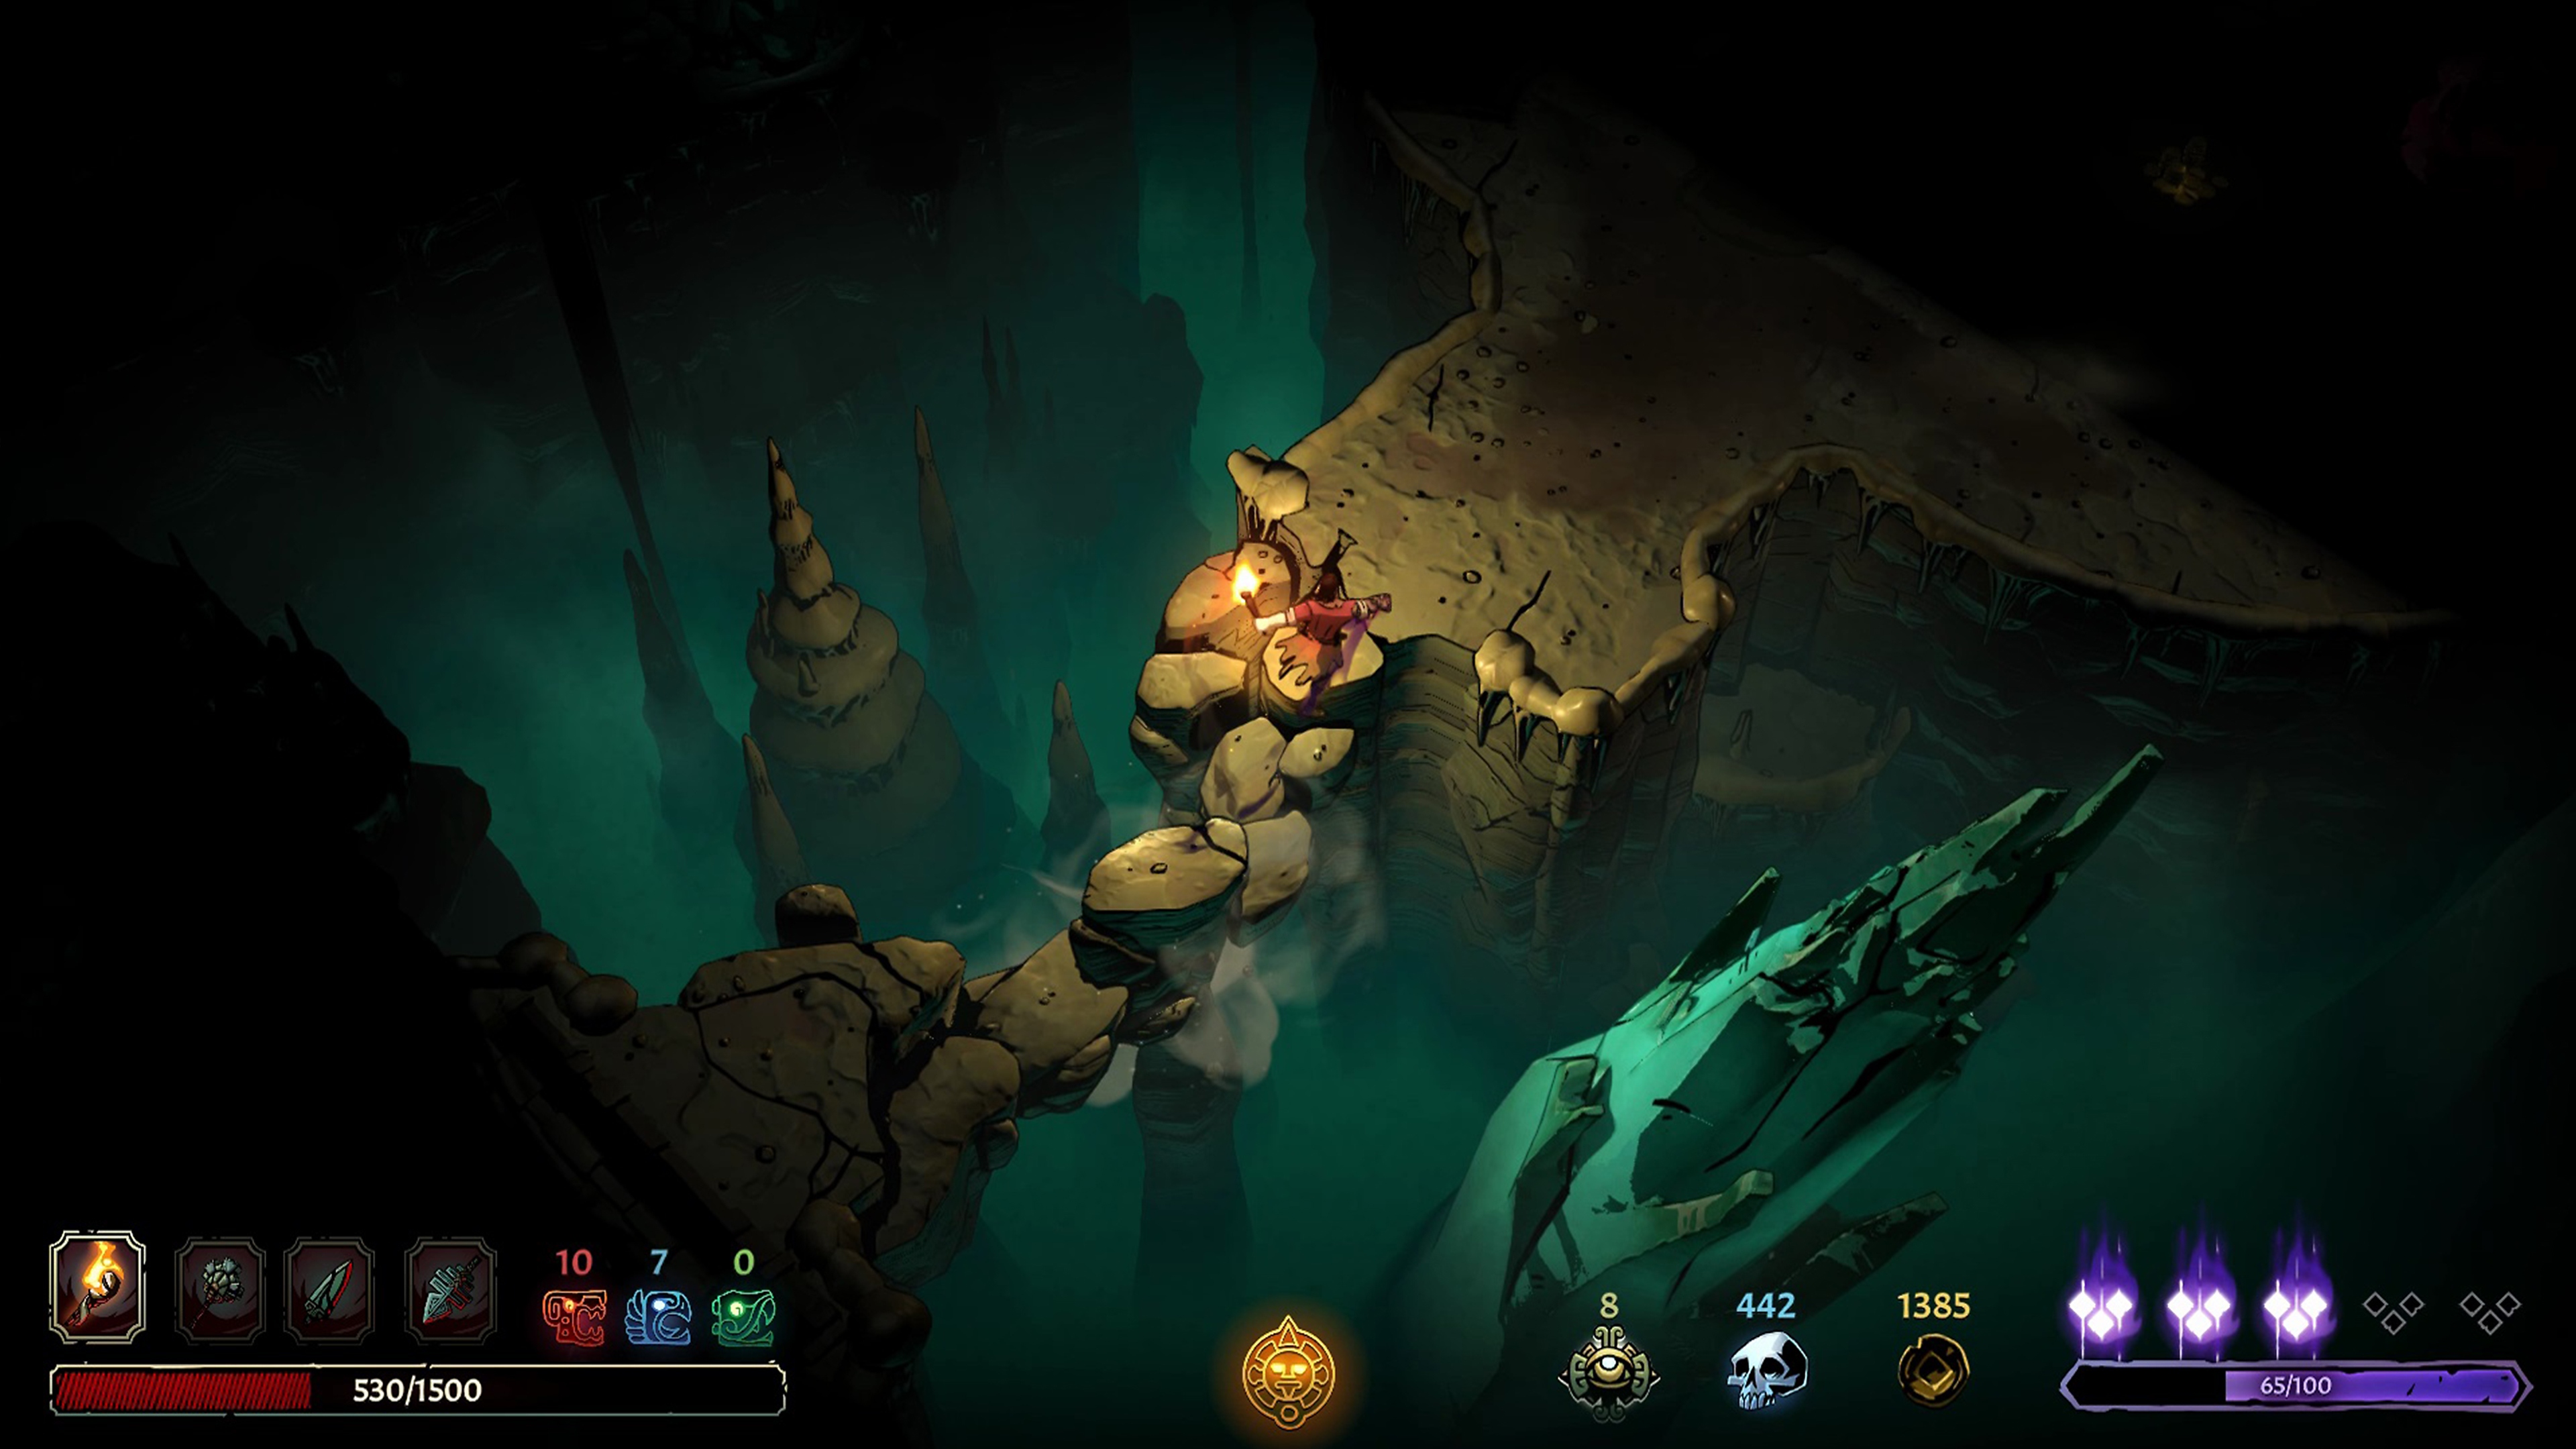 لقطة شاشة للعبة Curse of the Dead gods تُظهر طريقة اللعب الاستكشافية